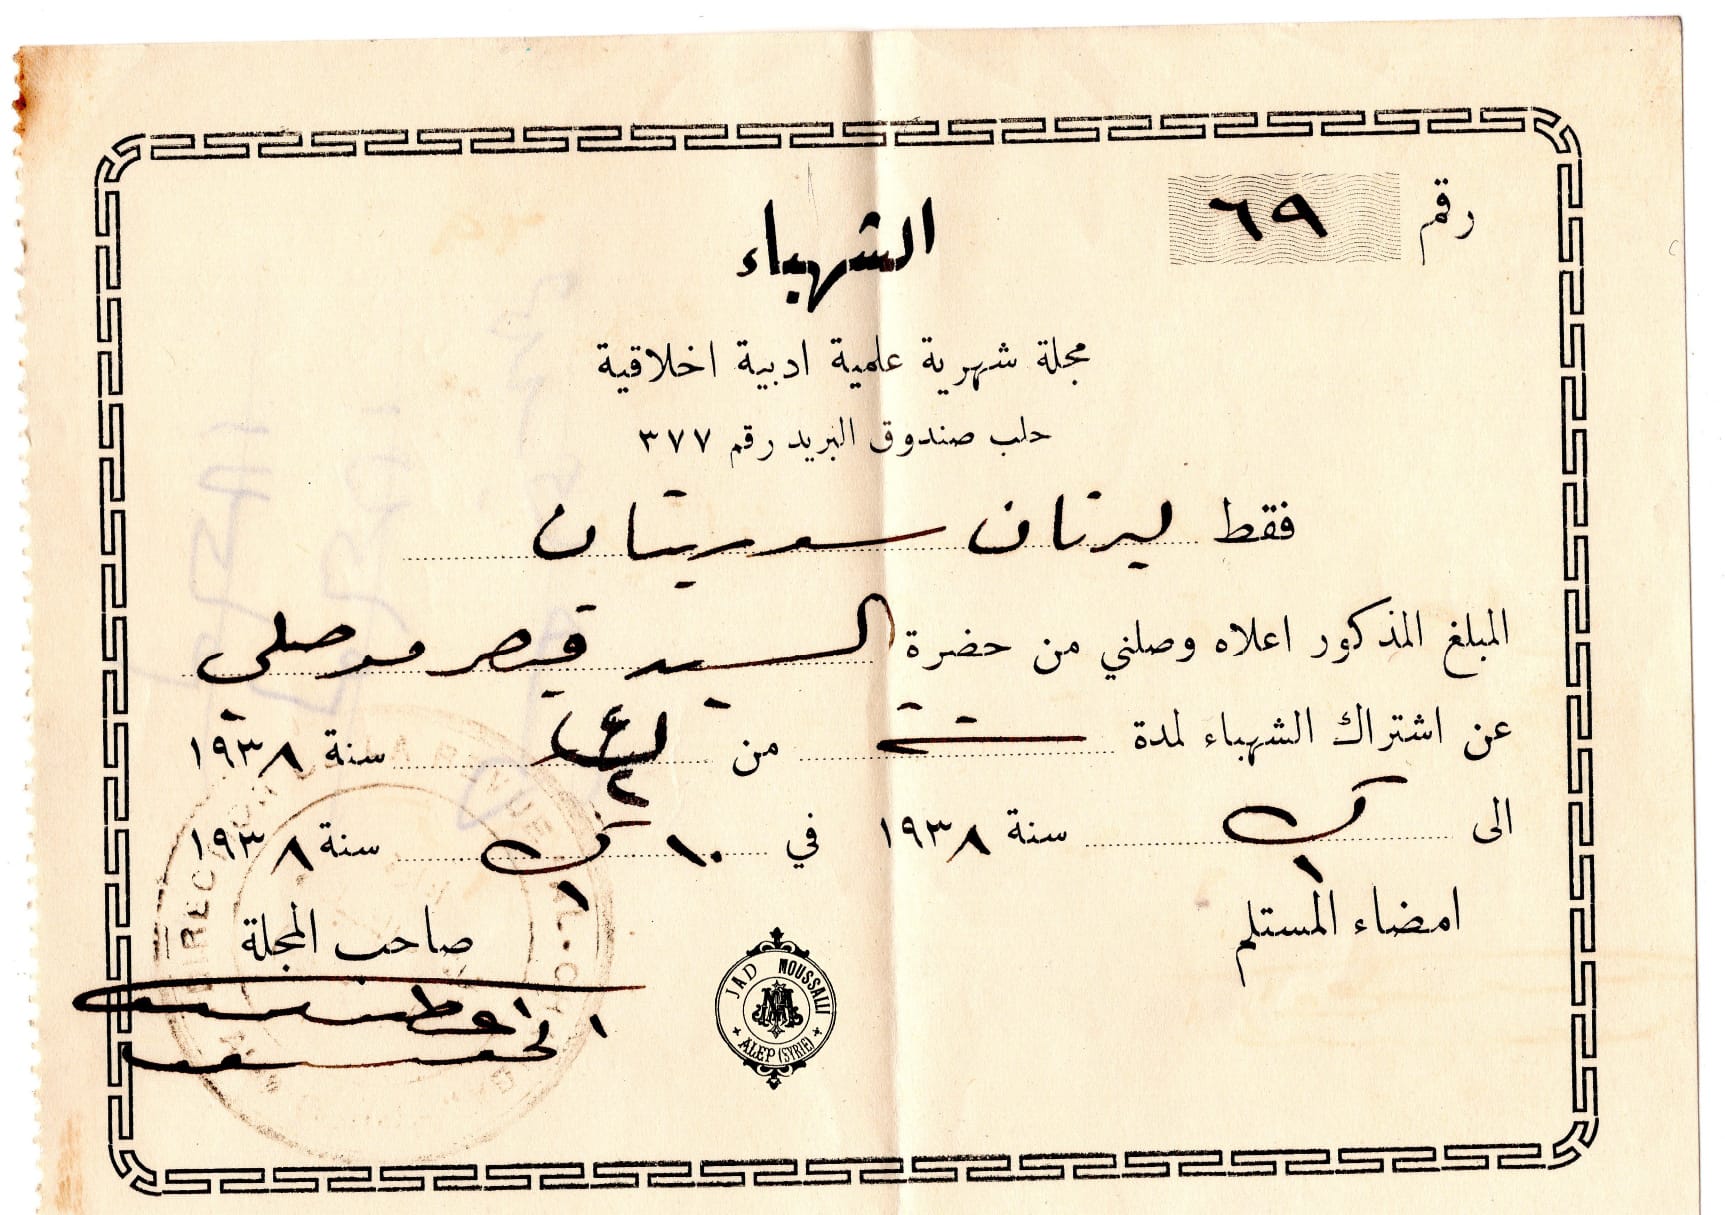 التاريخ السوري المعاصر - إيصال اشتراك في صحيفة الشهباء الصادرة في حلب عام 1938م